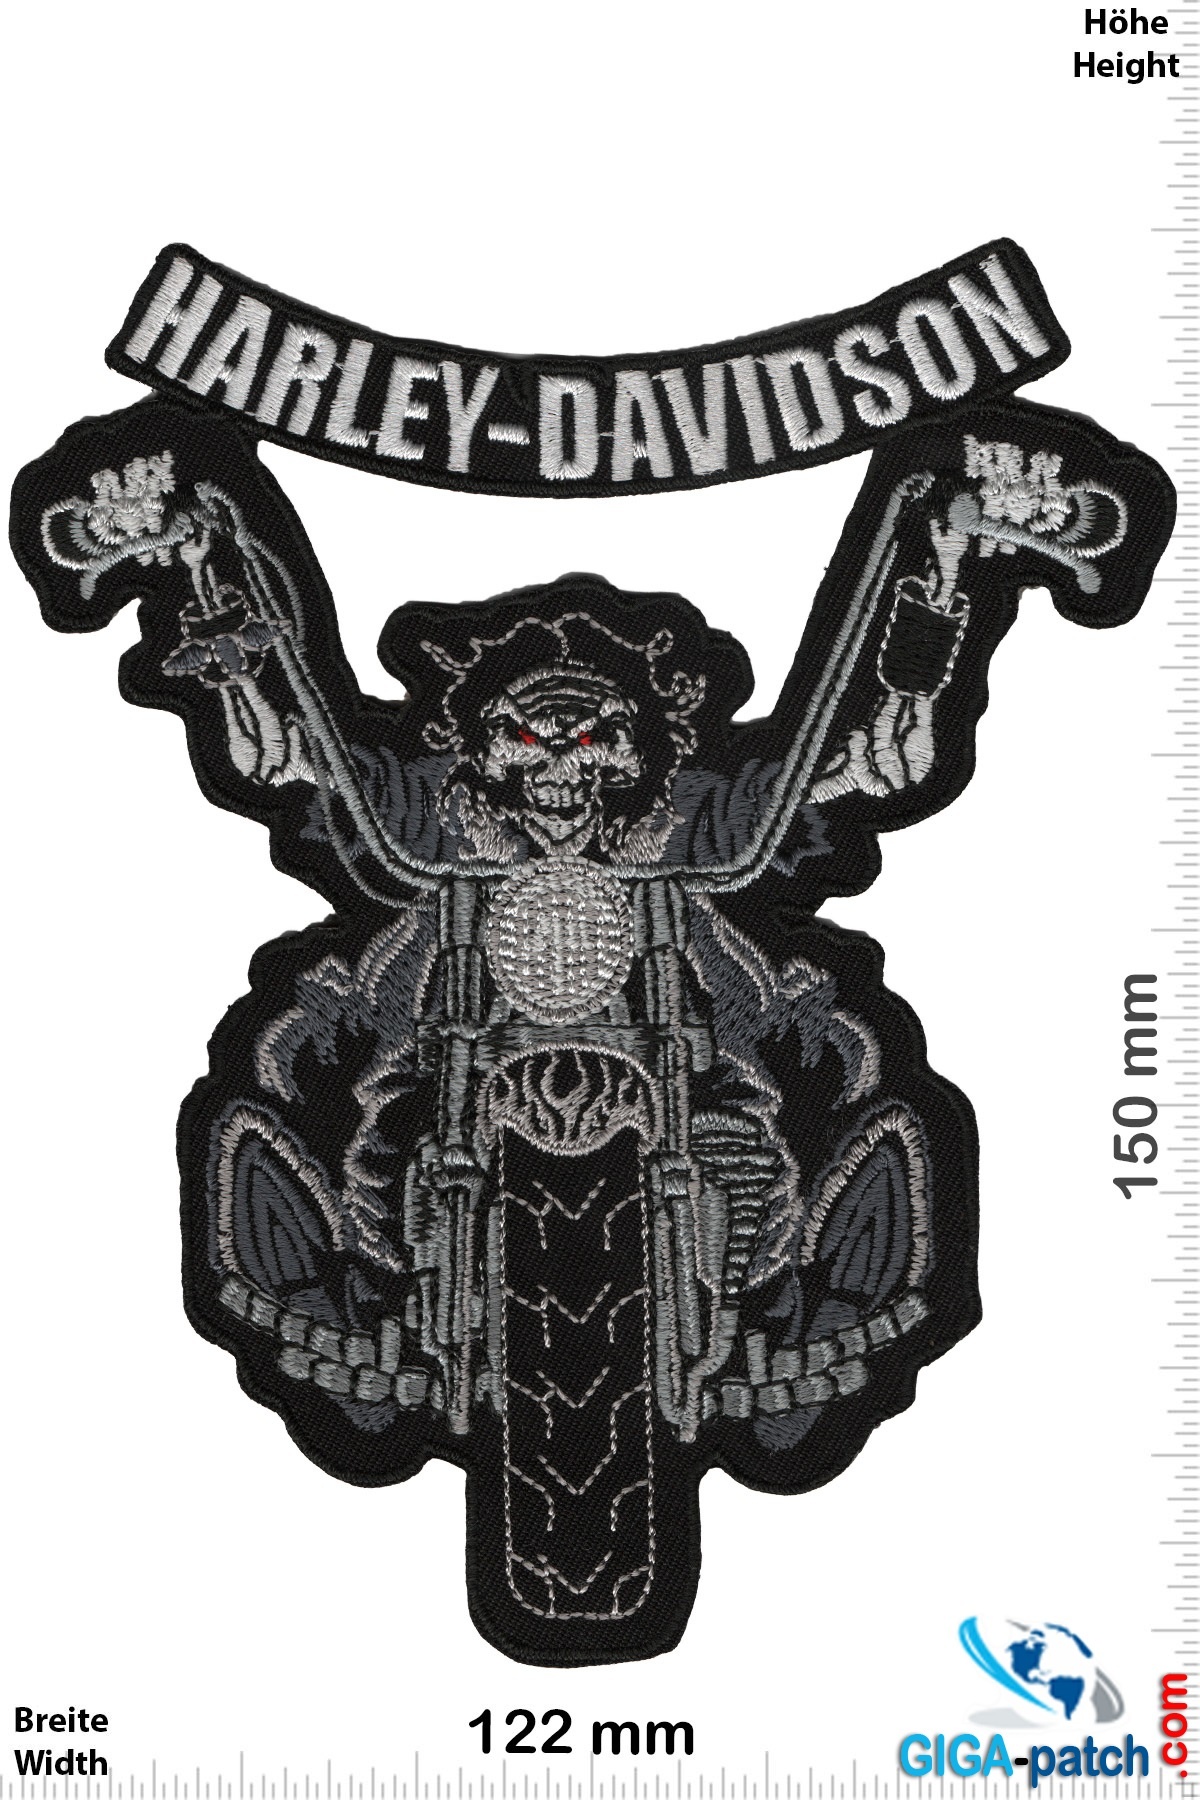 1:6 scale Biker Patch: Harley Davidson Motorcycle Back Patch